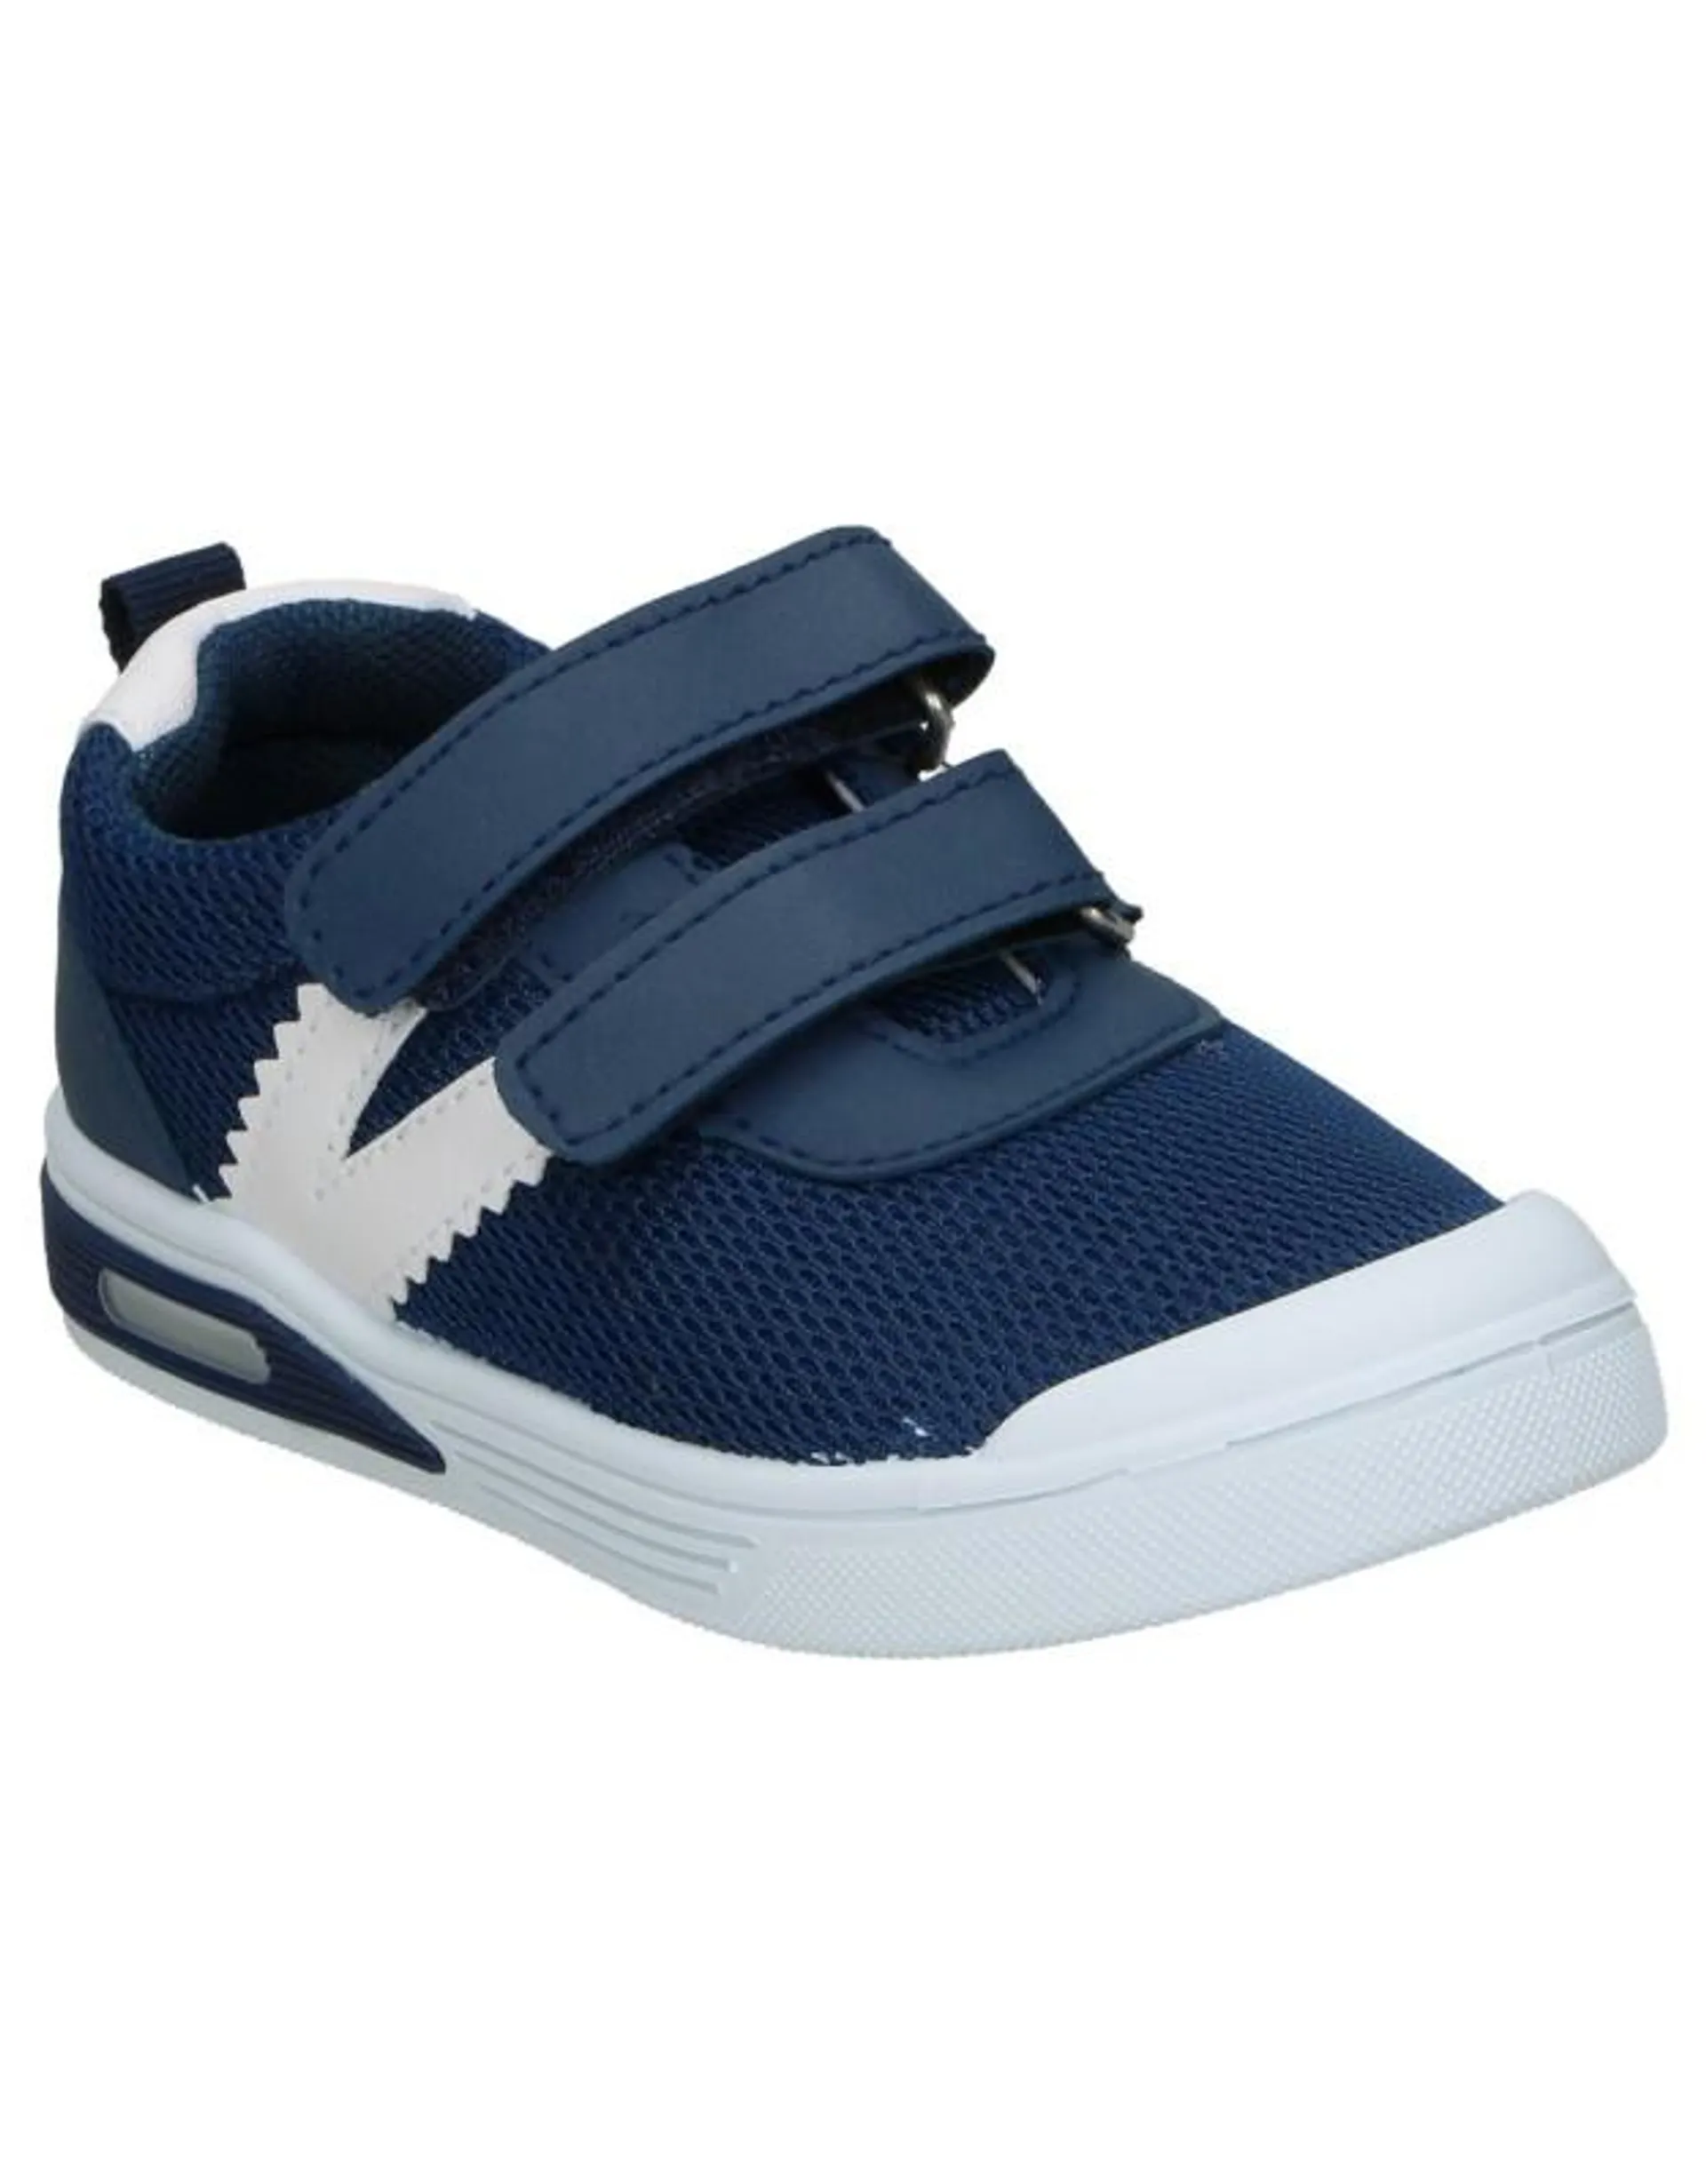 Zapatillas para niño Beppi 151422 color azul